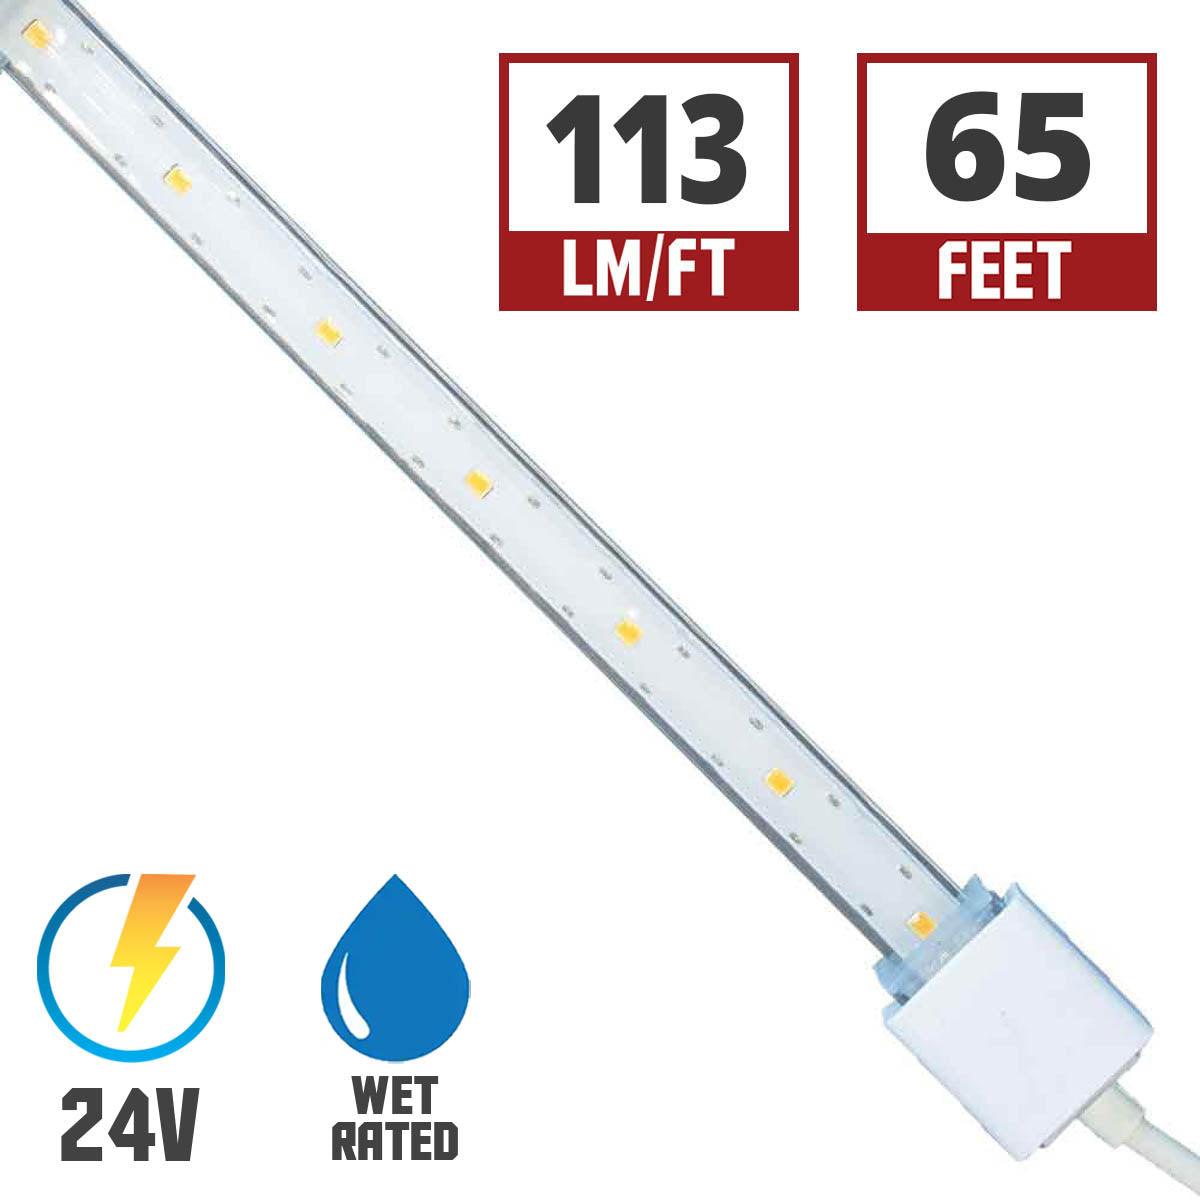 Hydrolume Slim Wet Location LED Tape Light, 65ft Reel, 120 Lumens per Ft, 24V - Bees Lighting